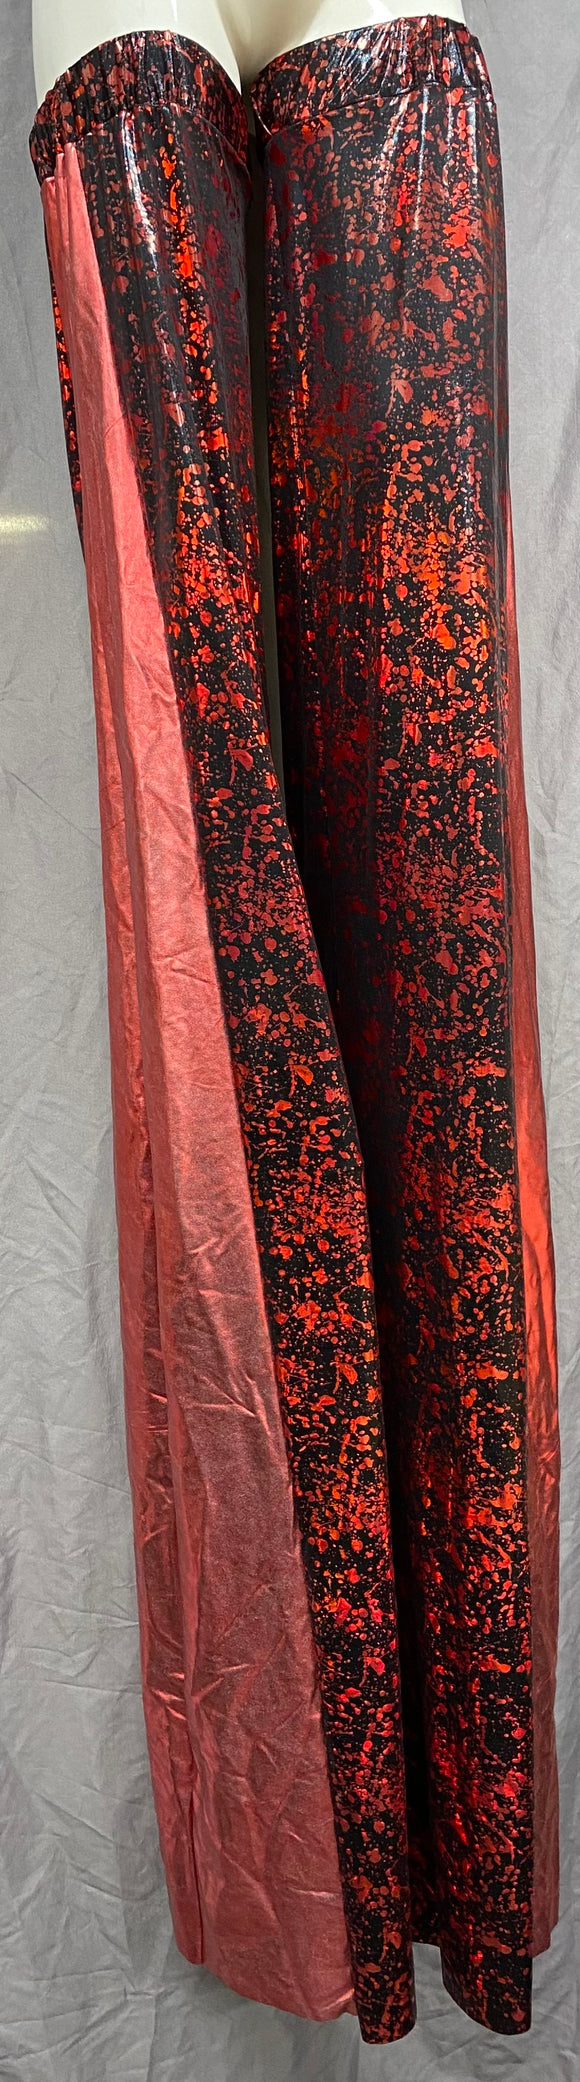 Stilt Covers - Black with Red Splatter 63.5